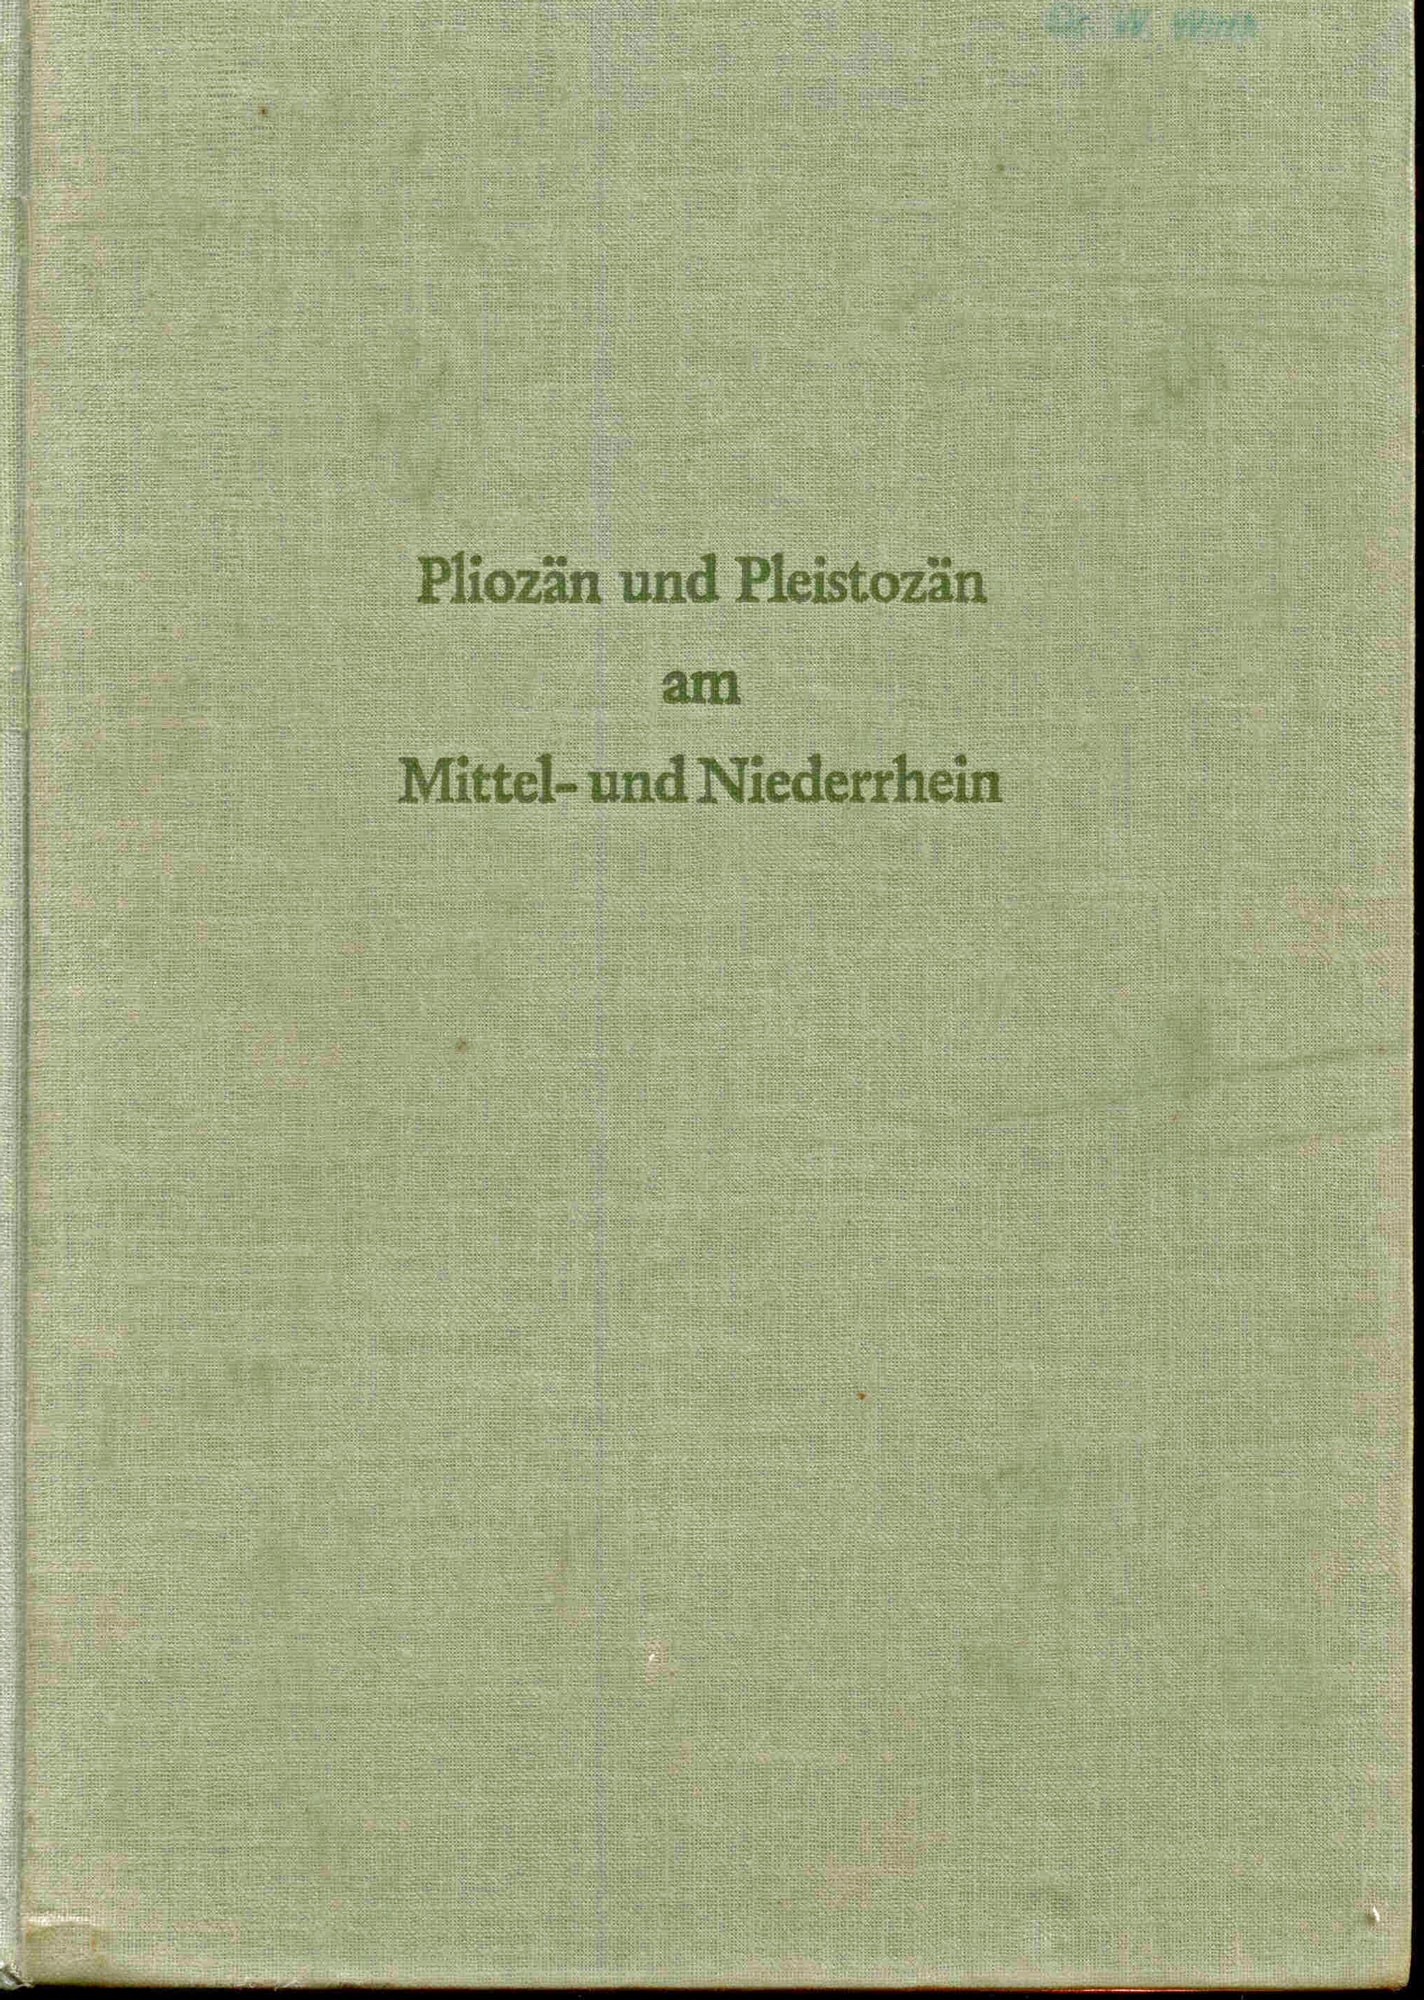 Teichmüller, R.: Pliozän und Pleistozän am Mittel- und Niederrhein. Ein Symposium.